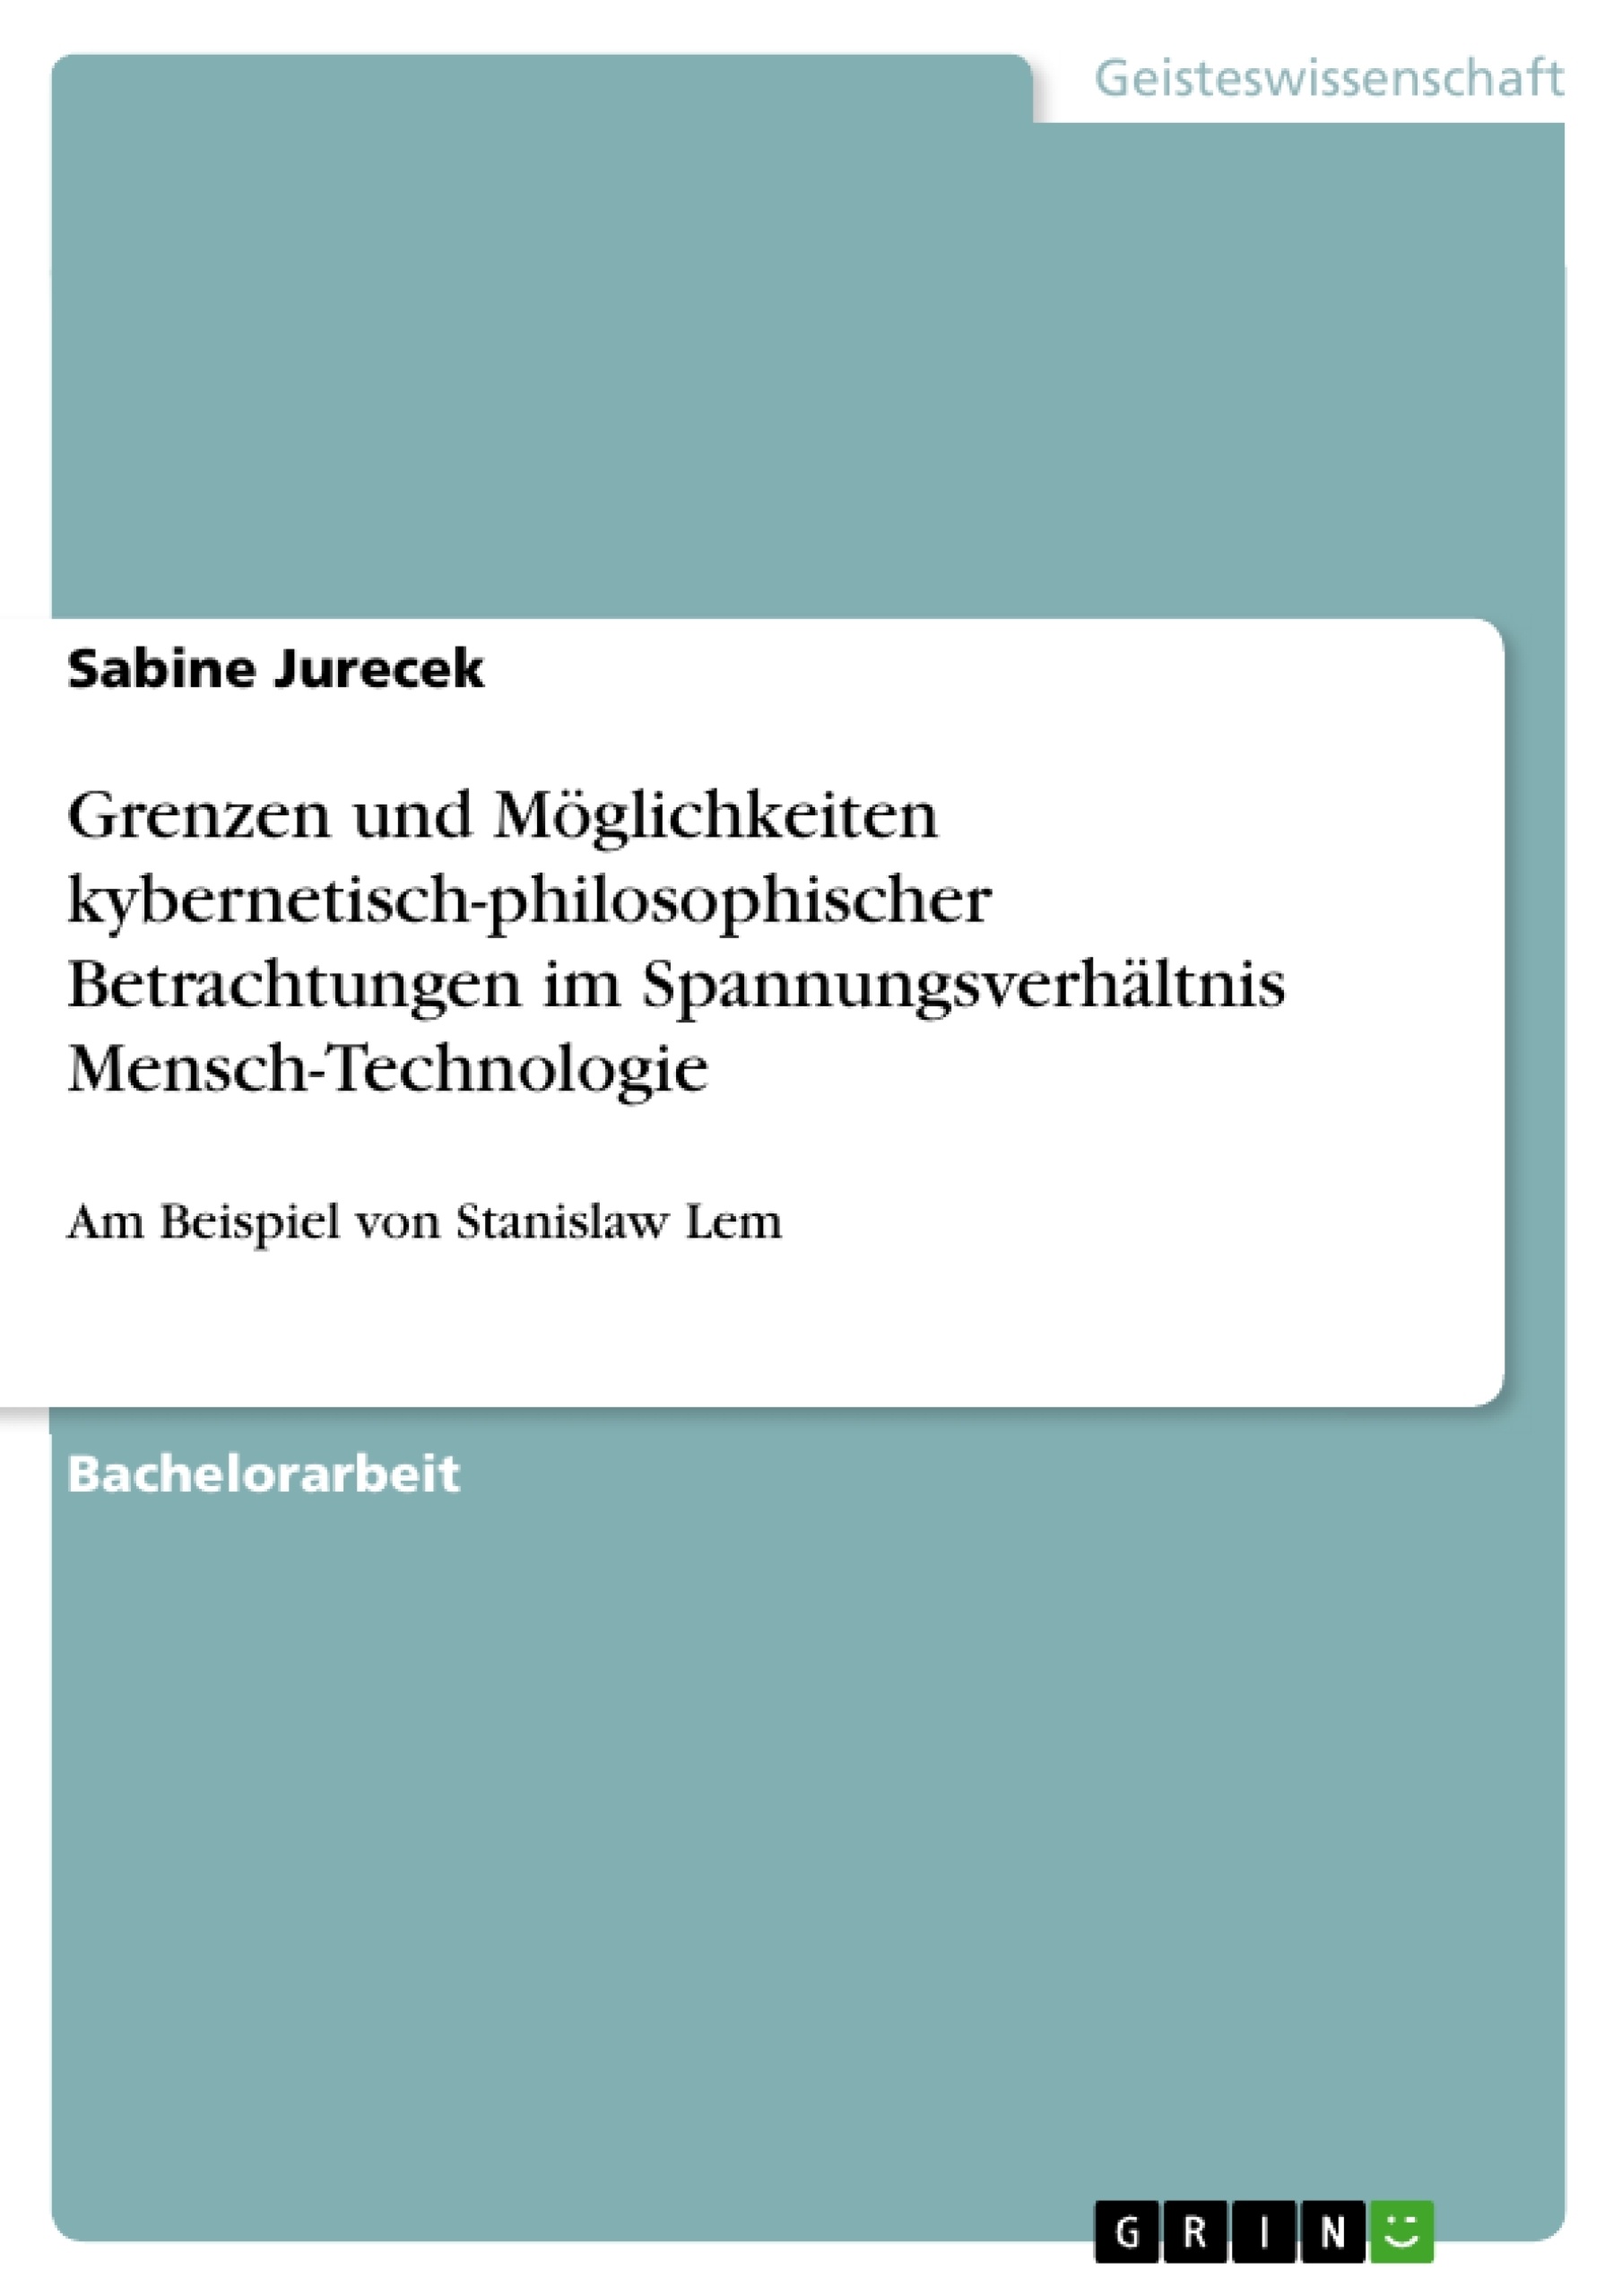 Titre: Grenzen und Möglichkeiten kybernetisch-philosophischer Betrachtungen im Spannungsverhältnis Mensch-Technologie